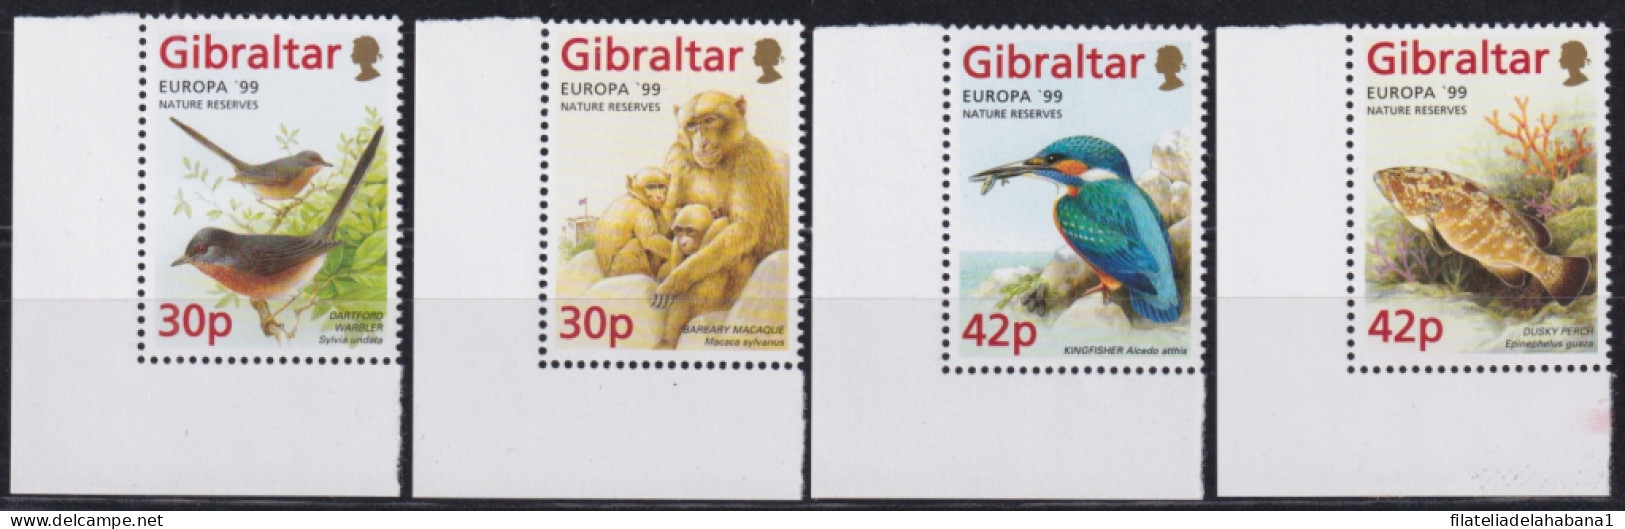 F-EX50154 GIBRALTAR MNH 1999 EUROPE CEPT WILDLIFE BIRD AVES FISH MONKEY & GARDEN.  - Ungebraucht